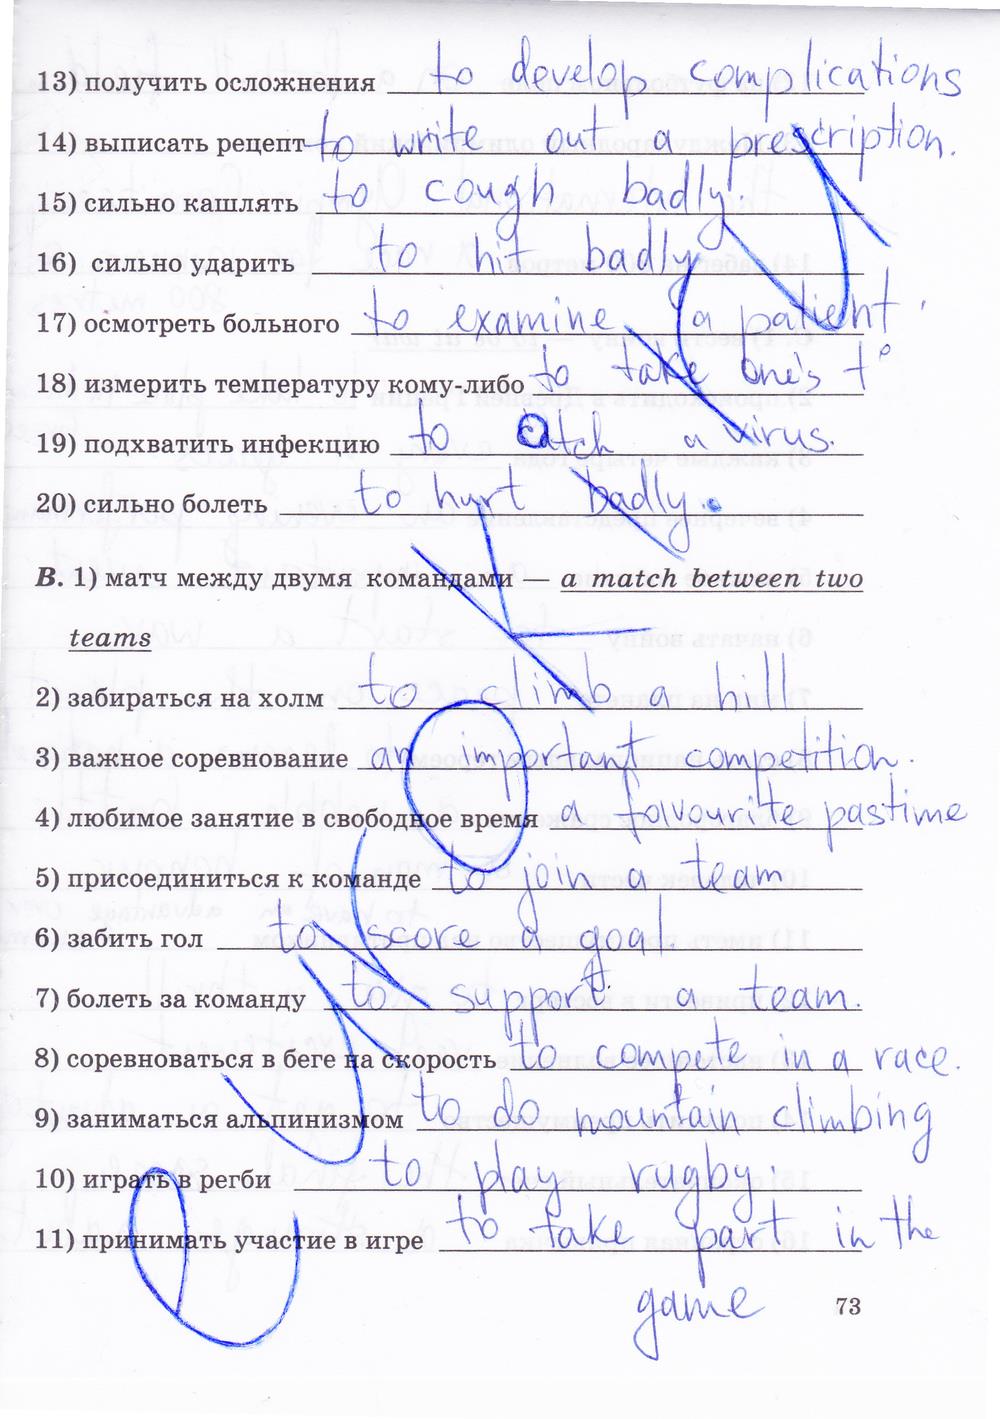 гдз 8 класс рабочая тетрадь часть 2 страница 73 английский язык Афанасьева, Михеева